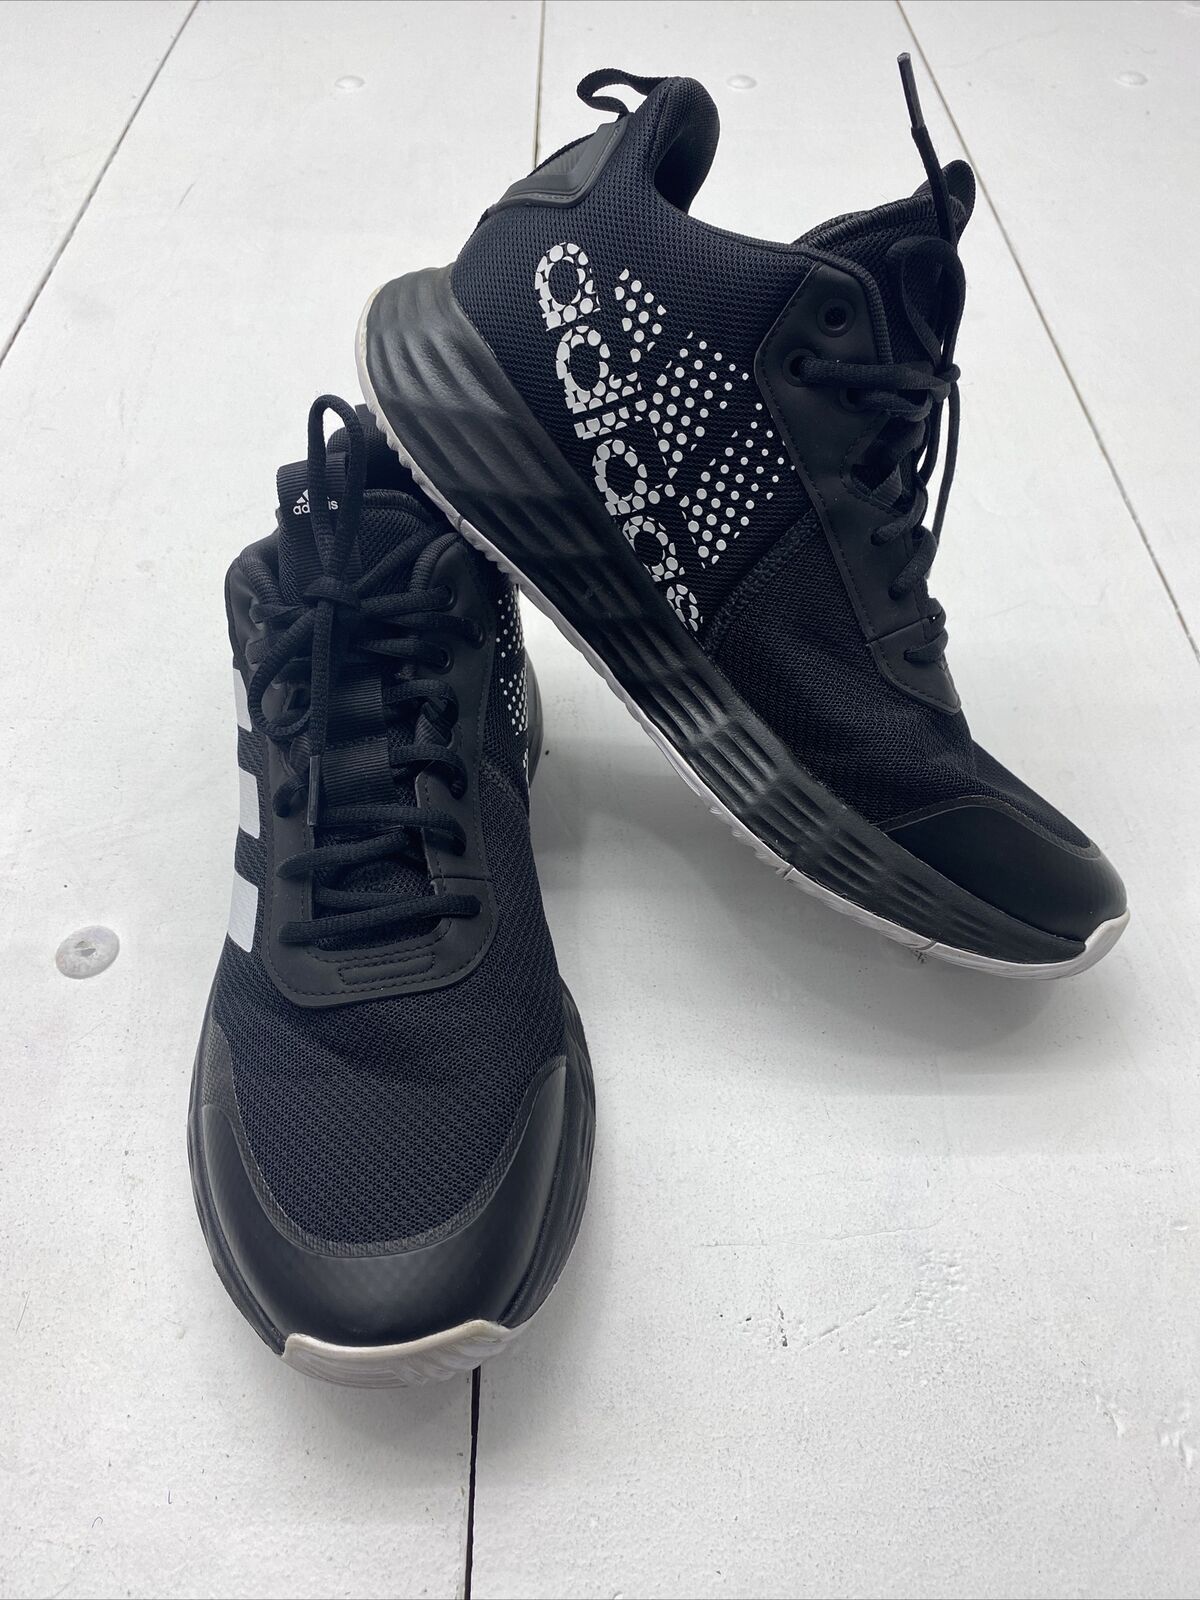 Adidas H00470 Kaptir 2.0 Running Shoes Black Basketball Sneakers Mens Size 11*